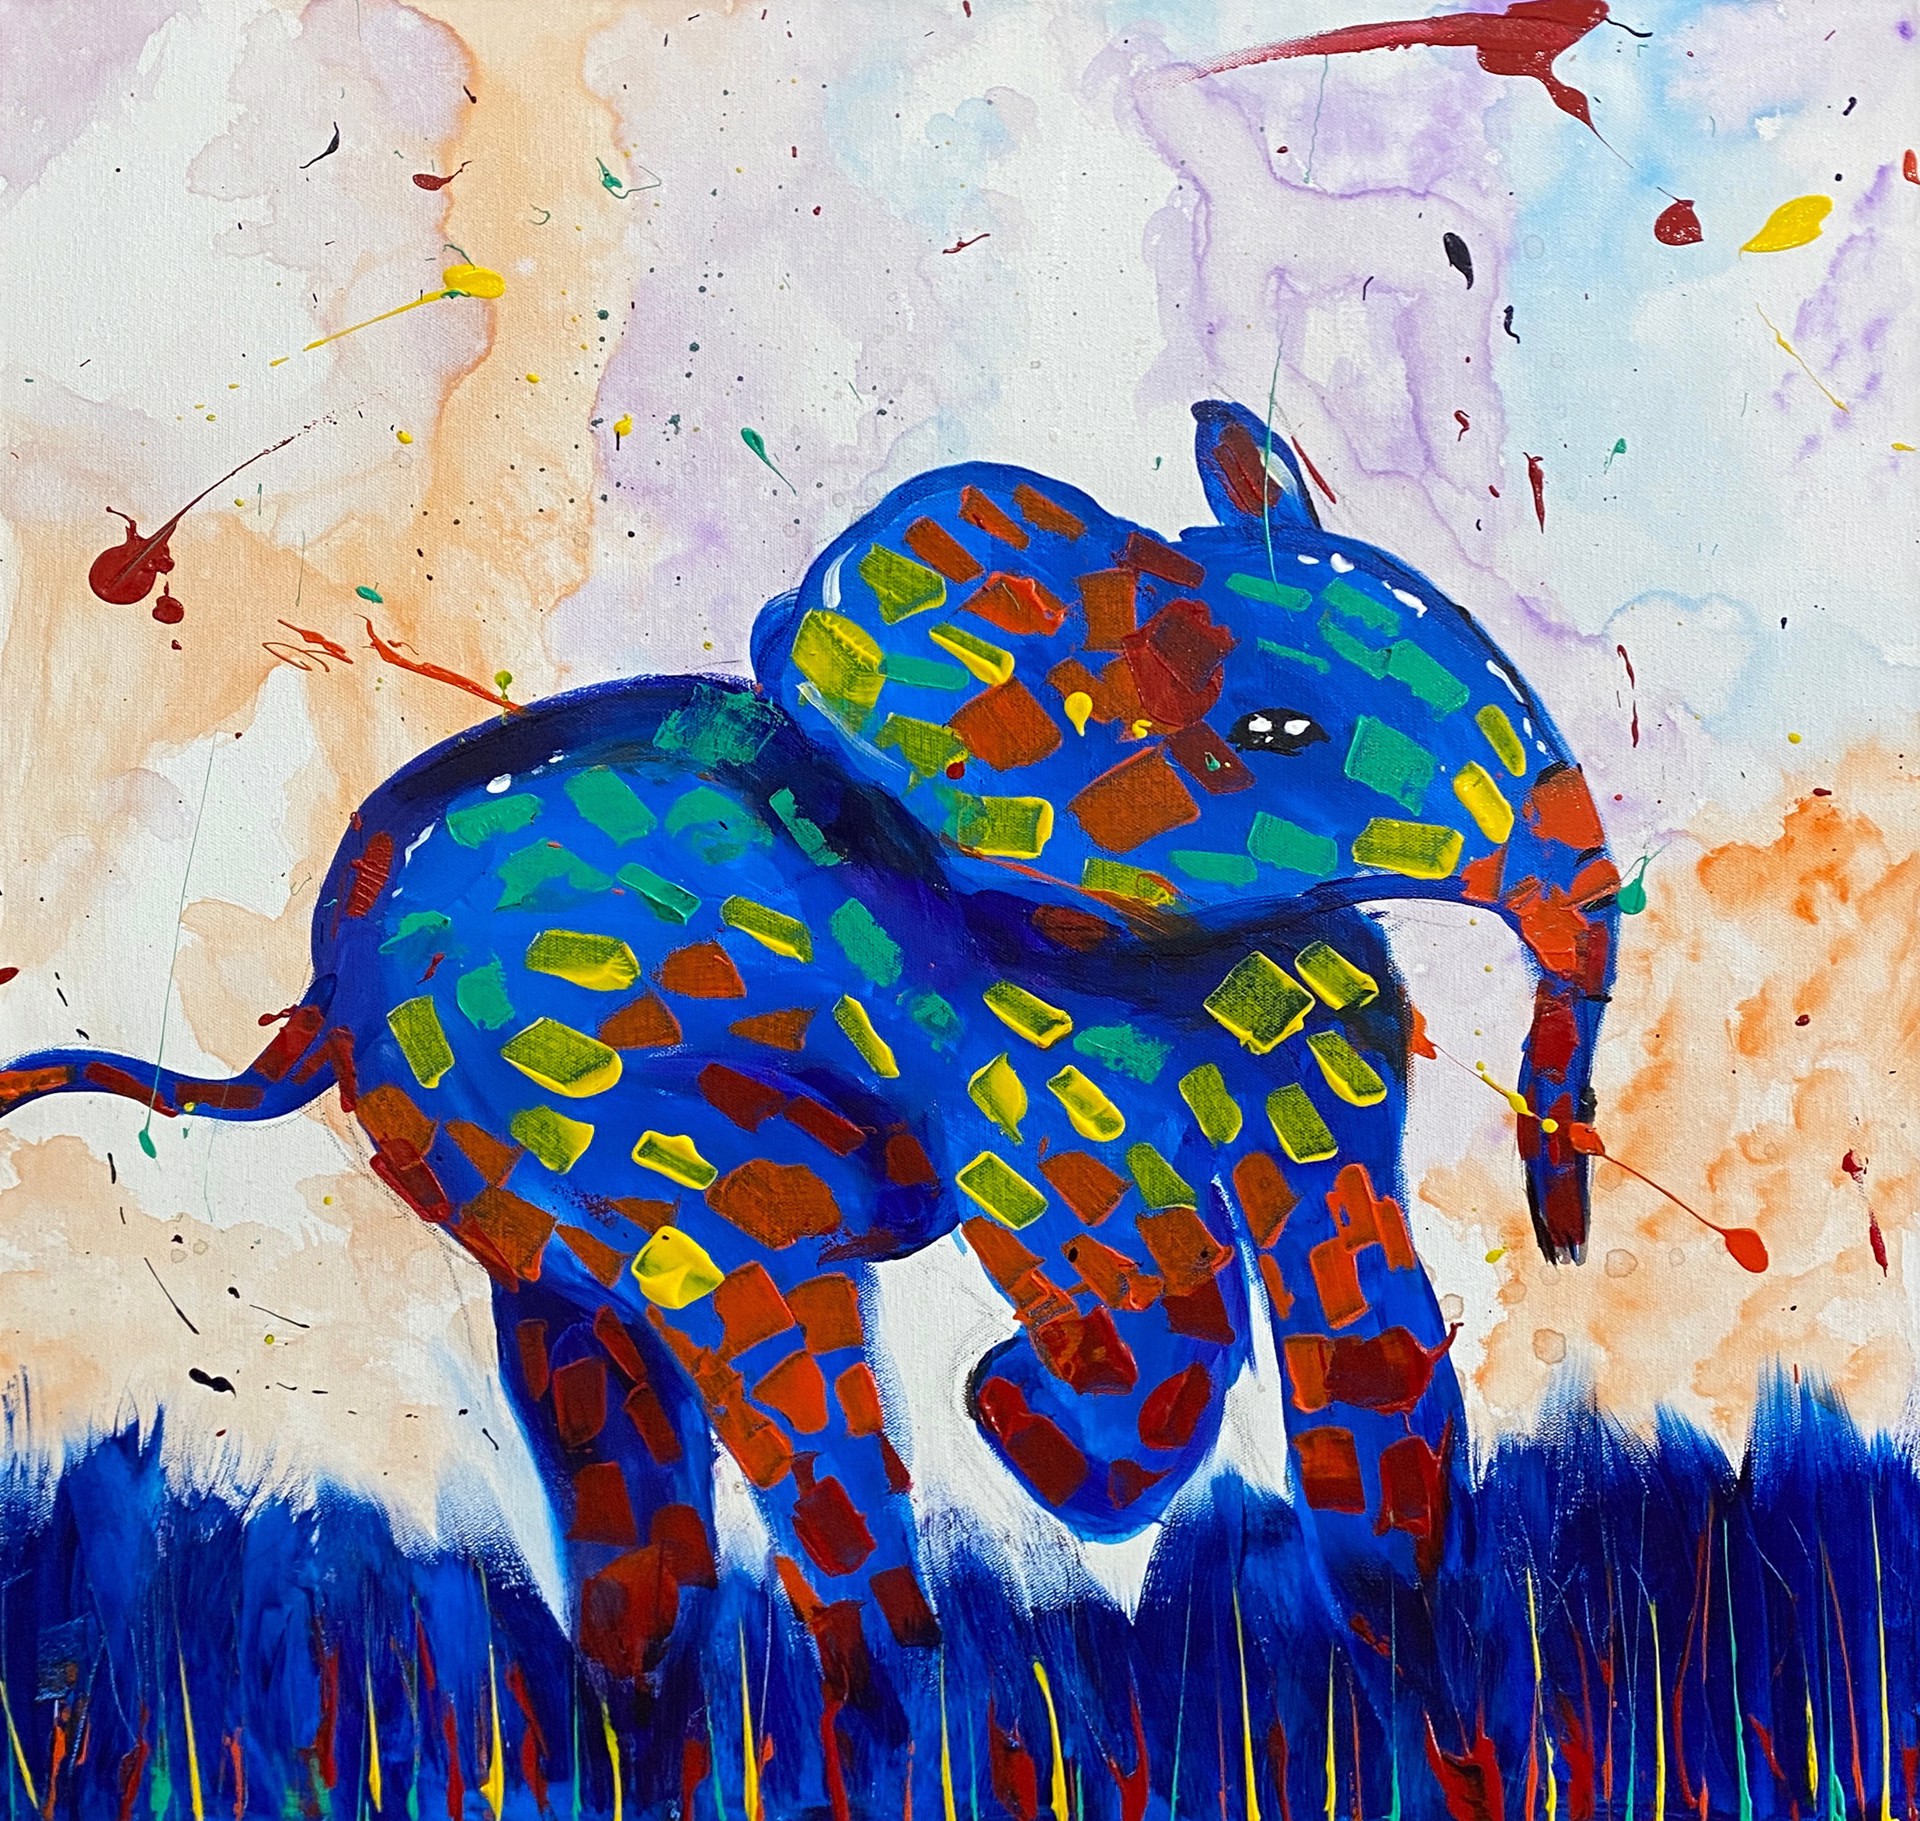 Dancing Elephant by Kyah Janssen